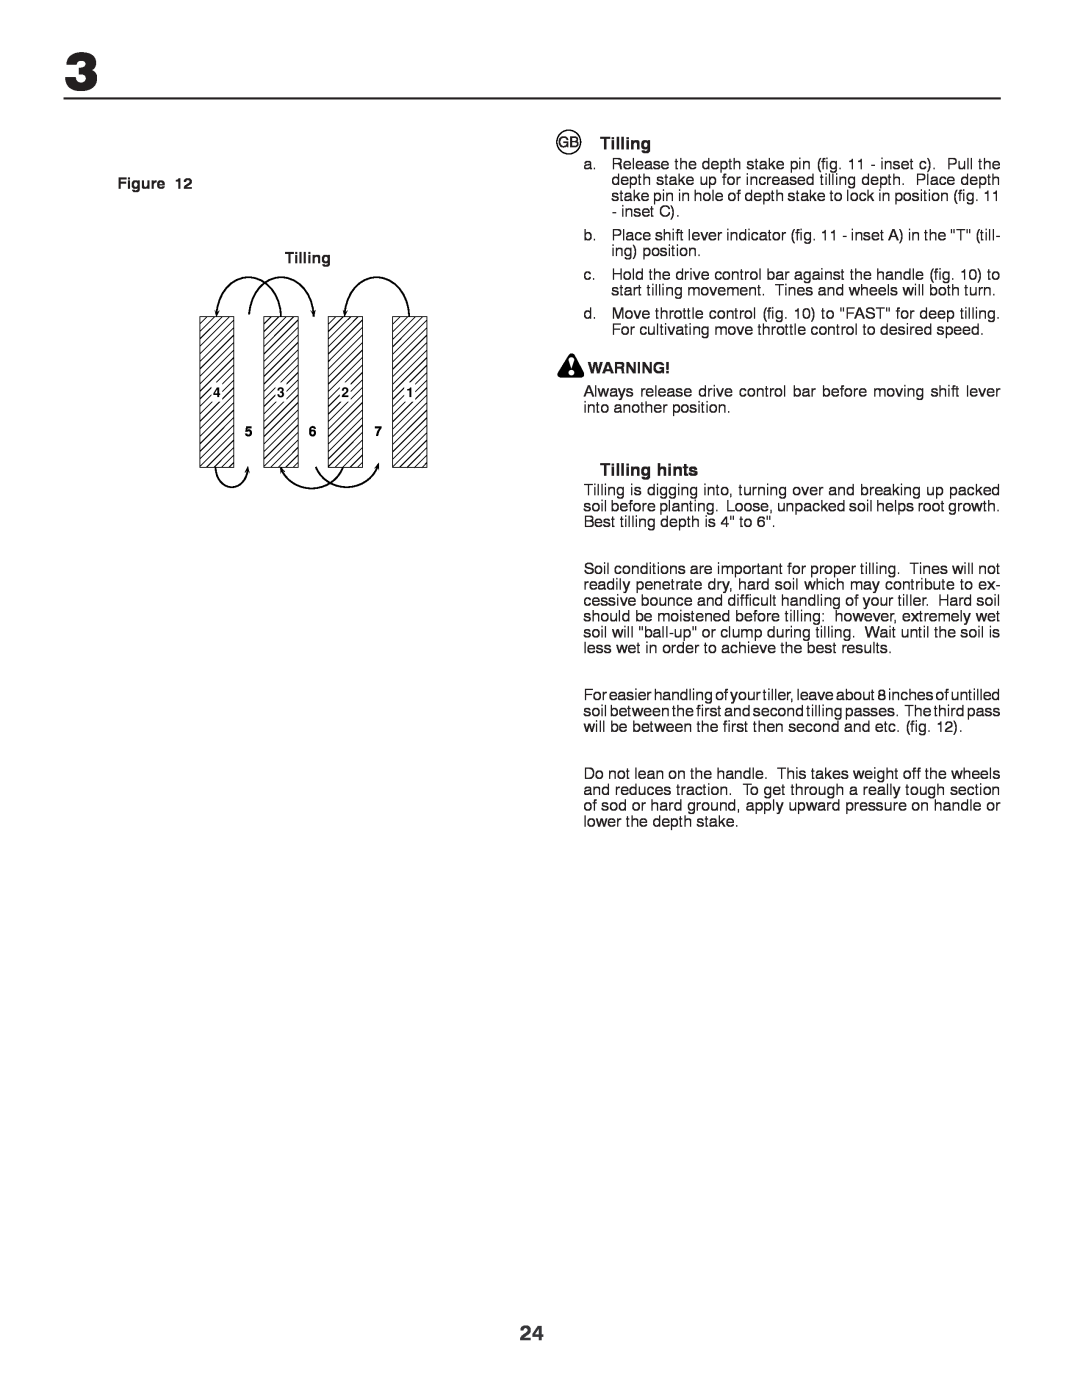 Husqvarna CRT81 instruction manual Tilling hints 